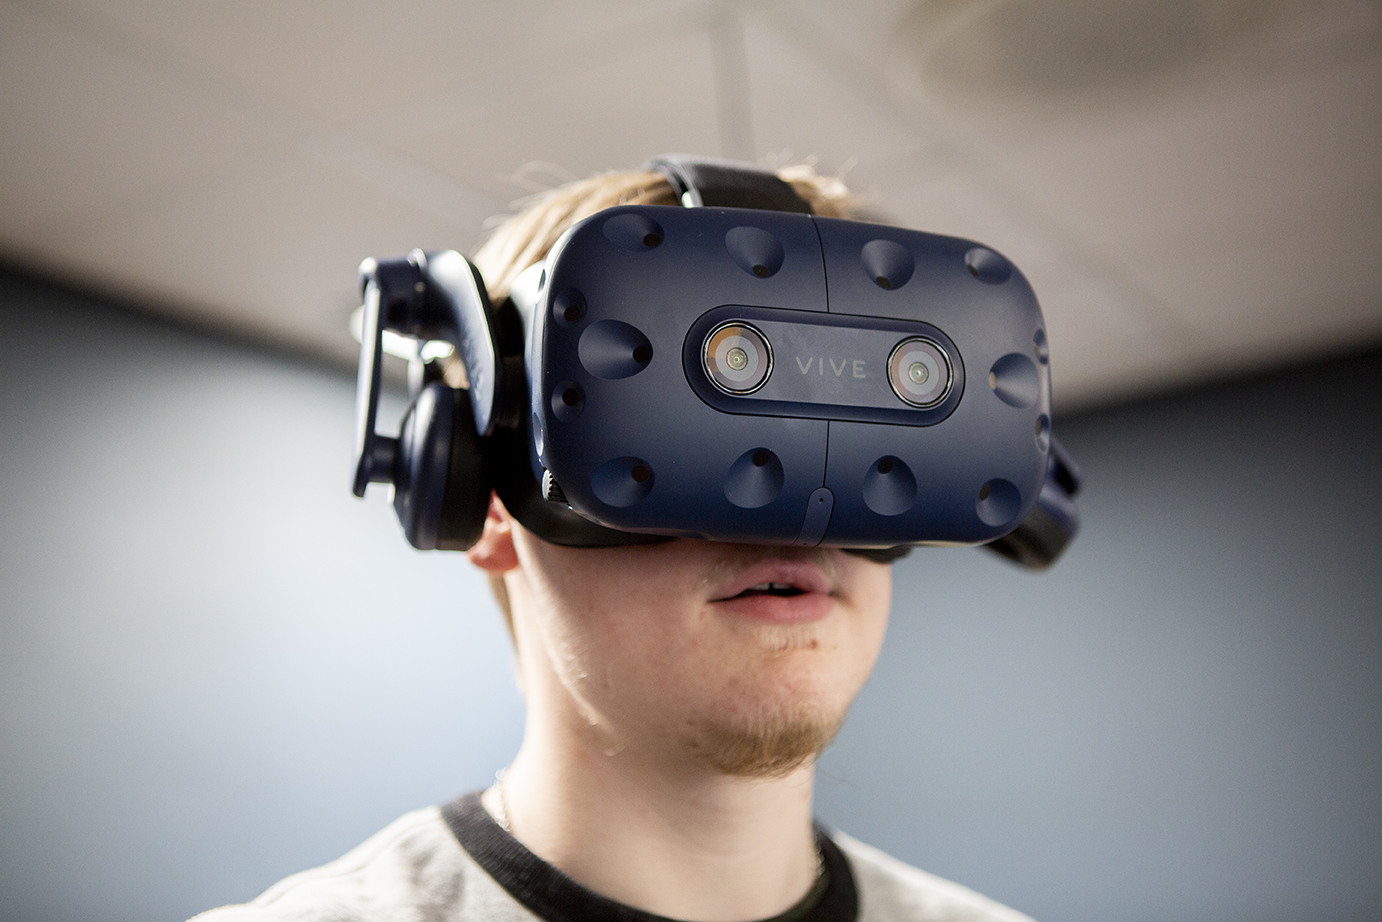 snyde Entreprenør Mekaniker Unge med autisme ser verden i øjnene gennem VR-briller - Special Minds